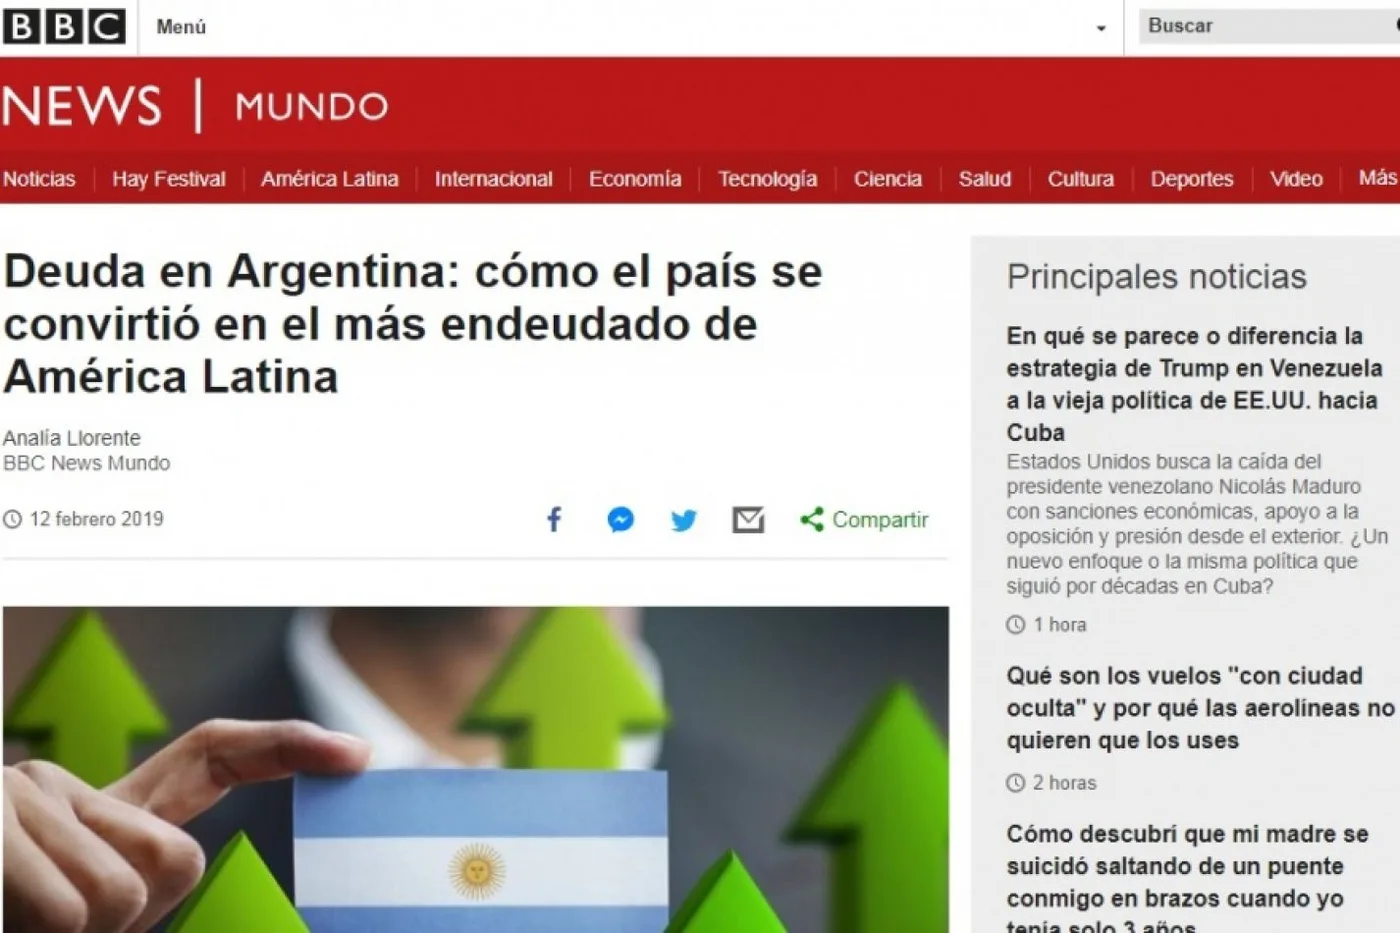 Durísima nota de la BBC sobre la crisis en Argentina